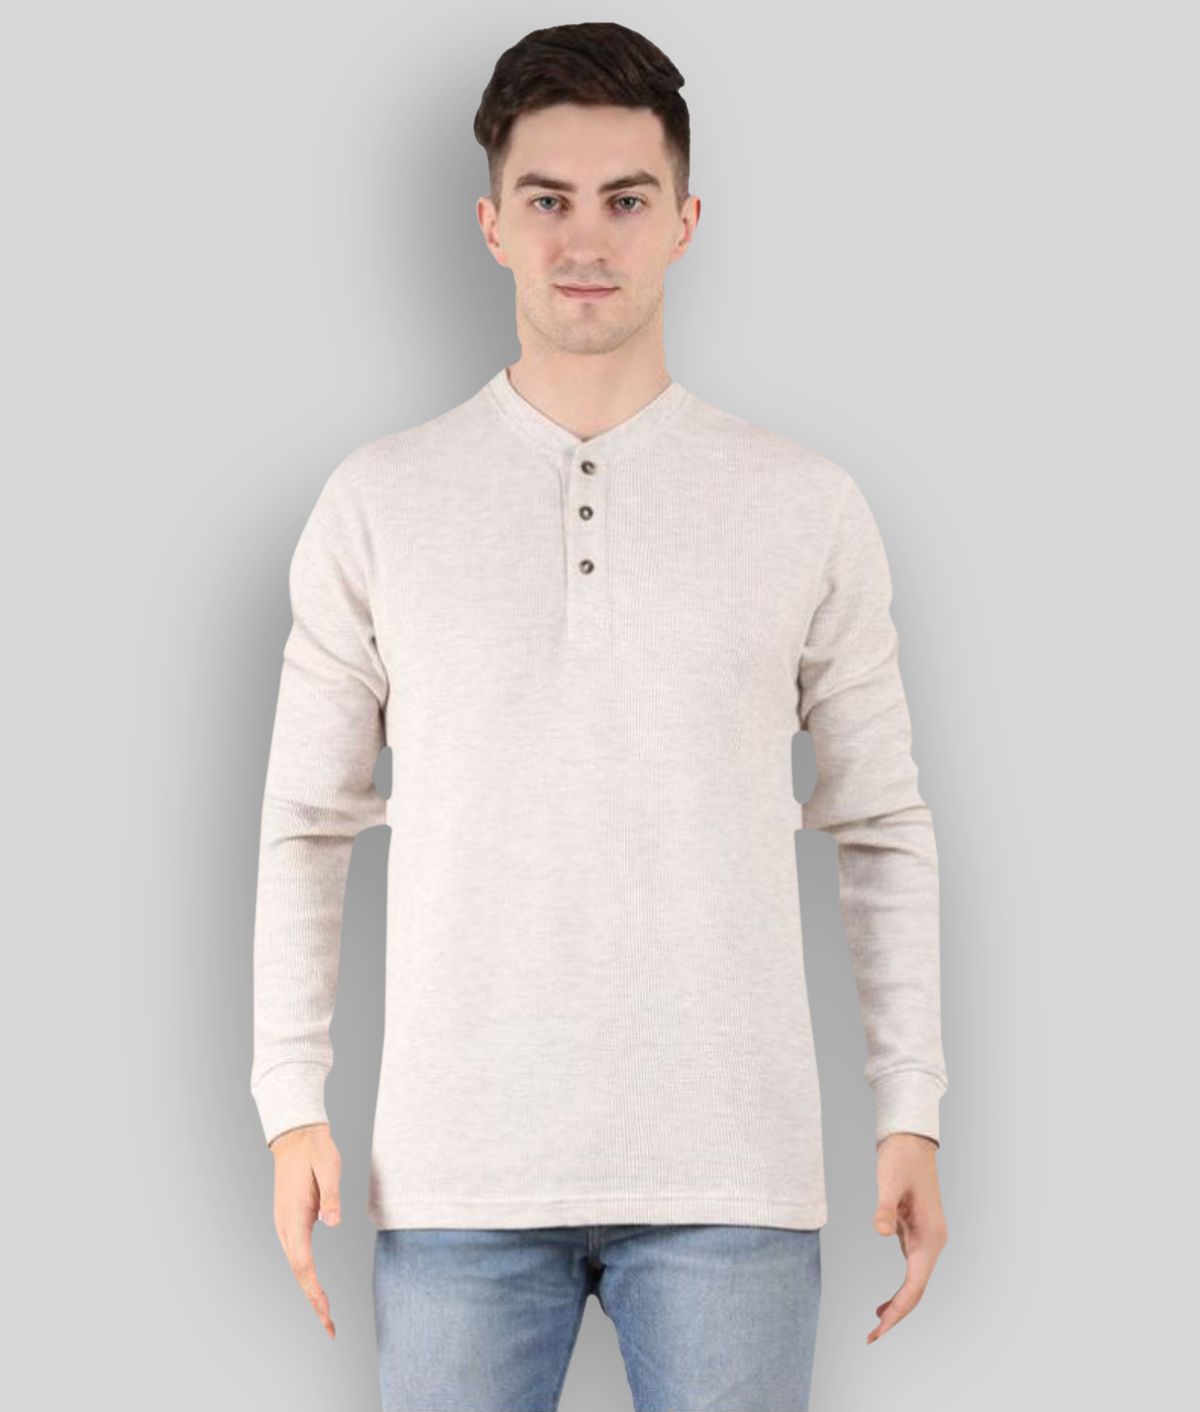     			Y & I - Off-White Cotton Blend Regular Fit Men's T-Shirt ( Pack of 1 )